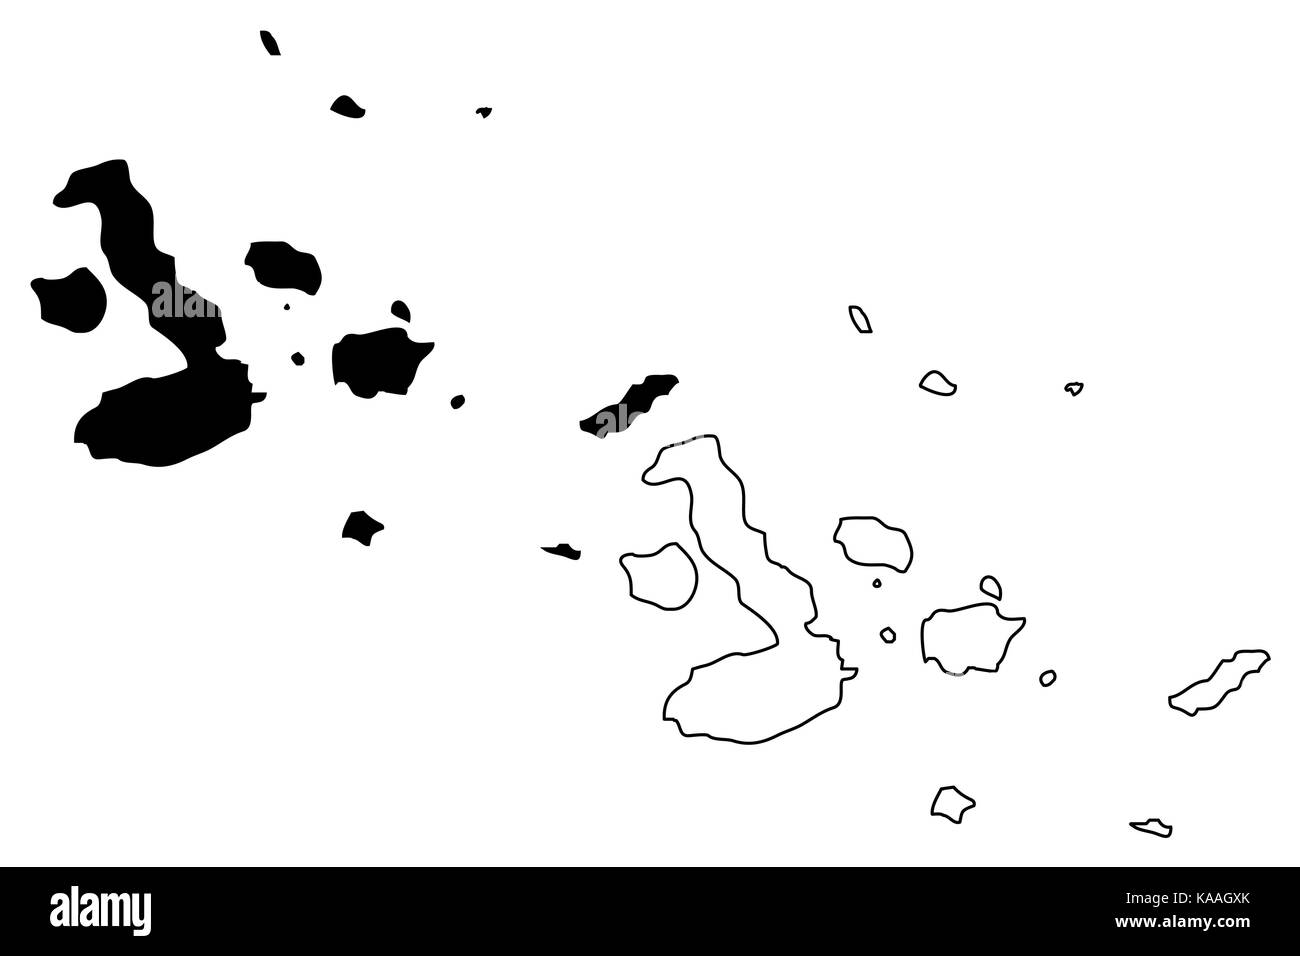 Illustration vectorielle de la carte des îles Galapagos, esquisse de gribouillage Galapagos Illustration de Vecteur